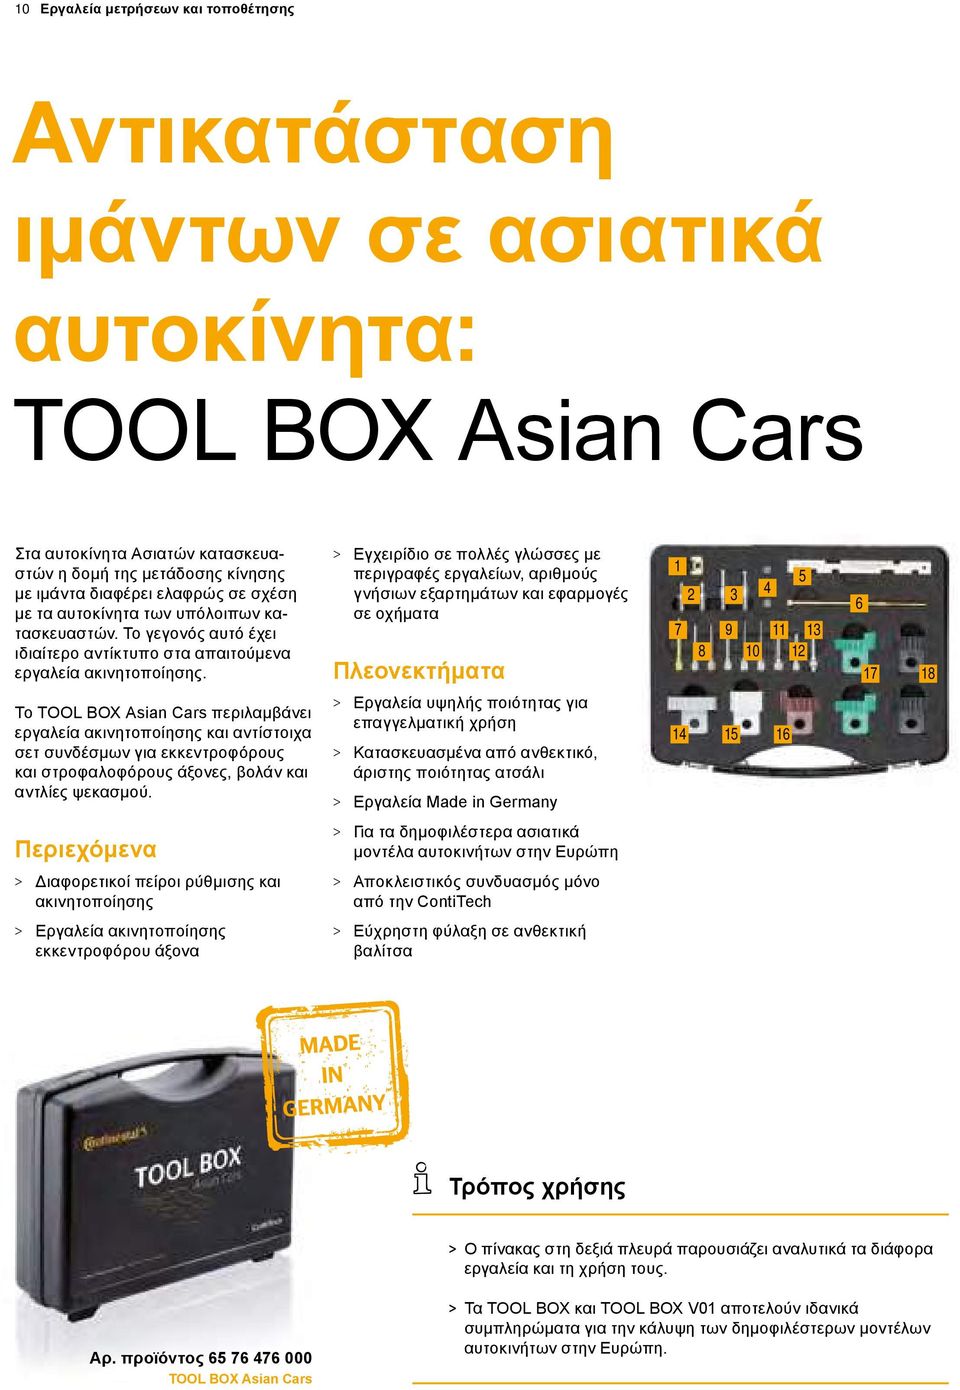 > > Εγχειρίδιο σε πολλές γλώσσες με περιγραφές εργαλείων, αριθμούς γνήσιων εξαρτημάτων και εφαρμογές σε οχήματα Πλεονεκτήματα 1 2 3 7 9 8 10 4 11 5 13 12 6 17 18 Το TOOL BOX Asian Cars περιλαμβάνει